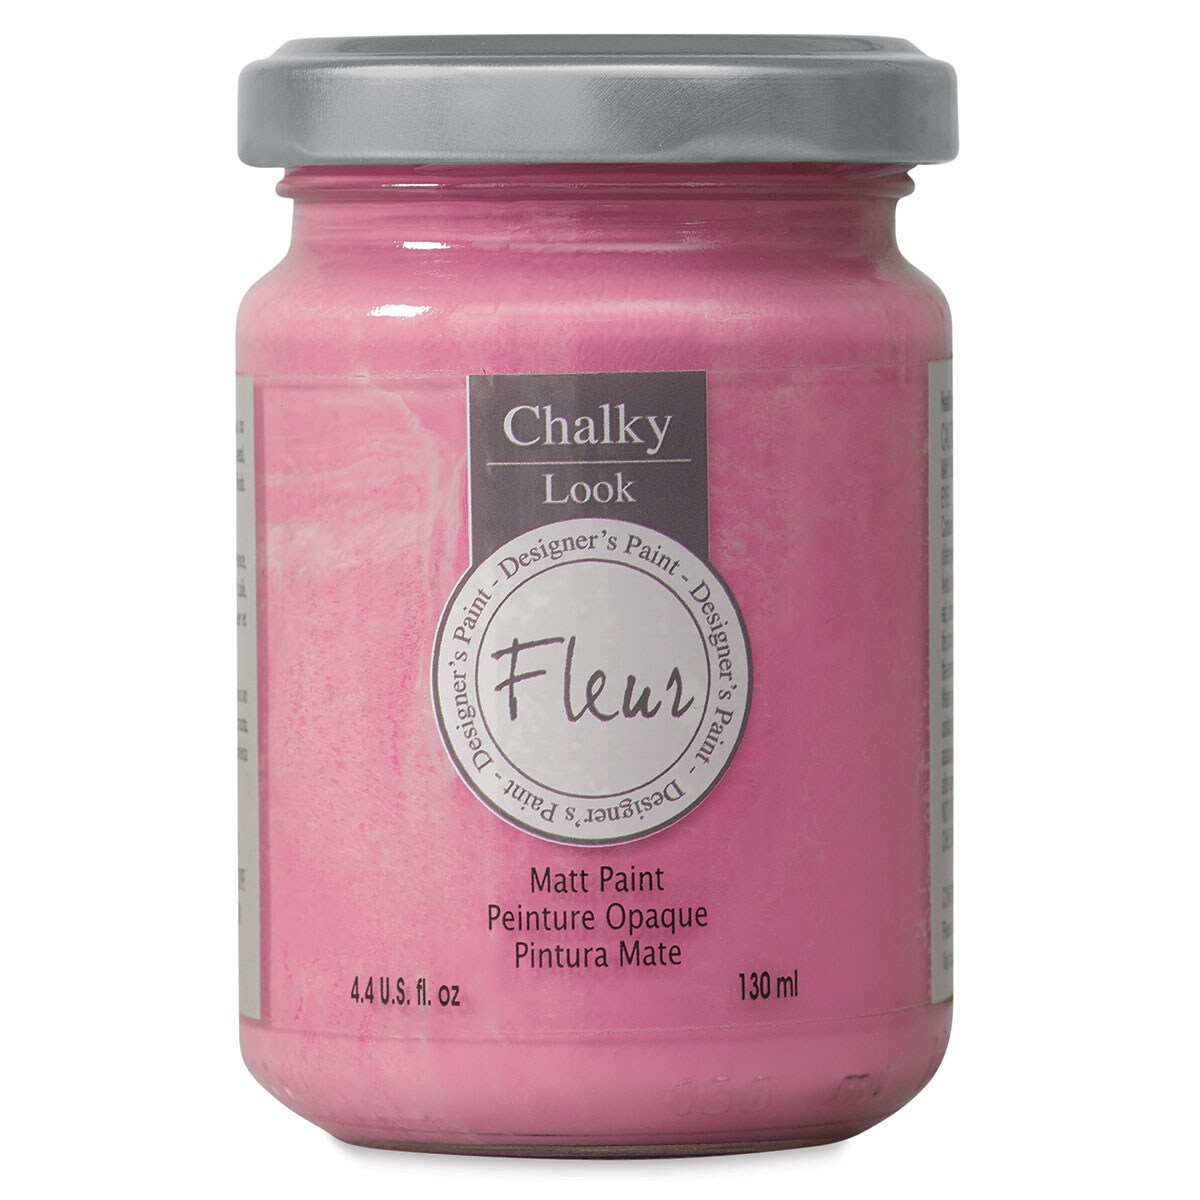 Fleur Chalky Look Paint - American Beauty, 4.4 oz jar